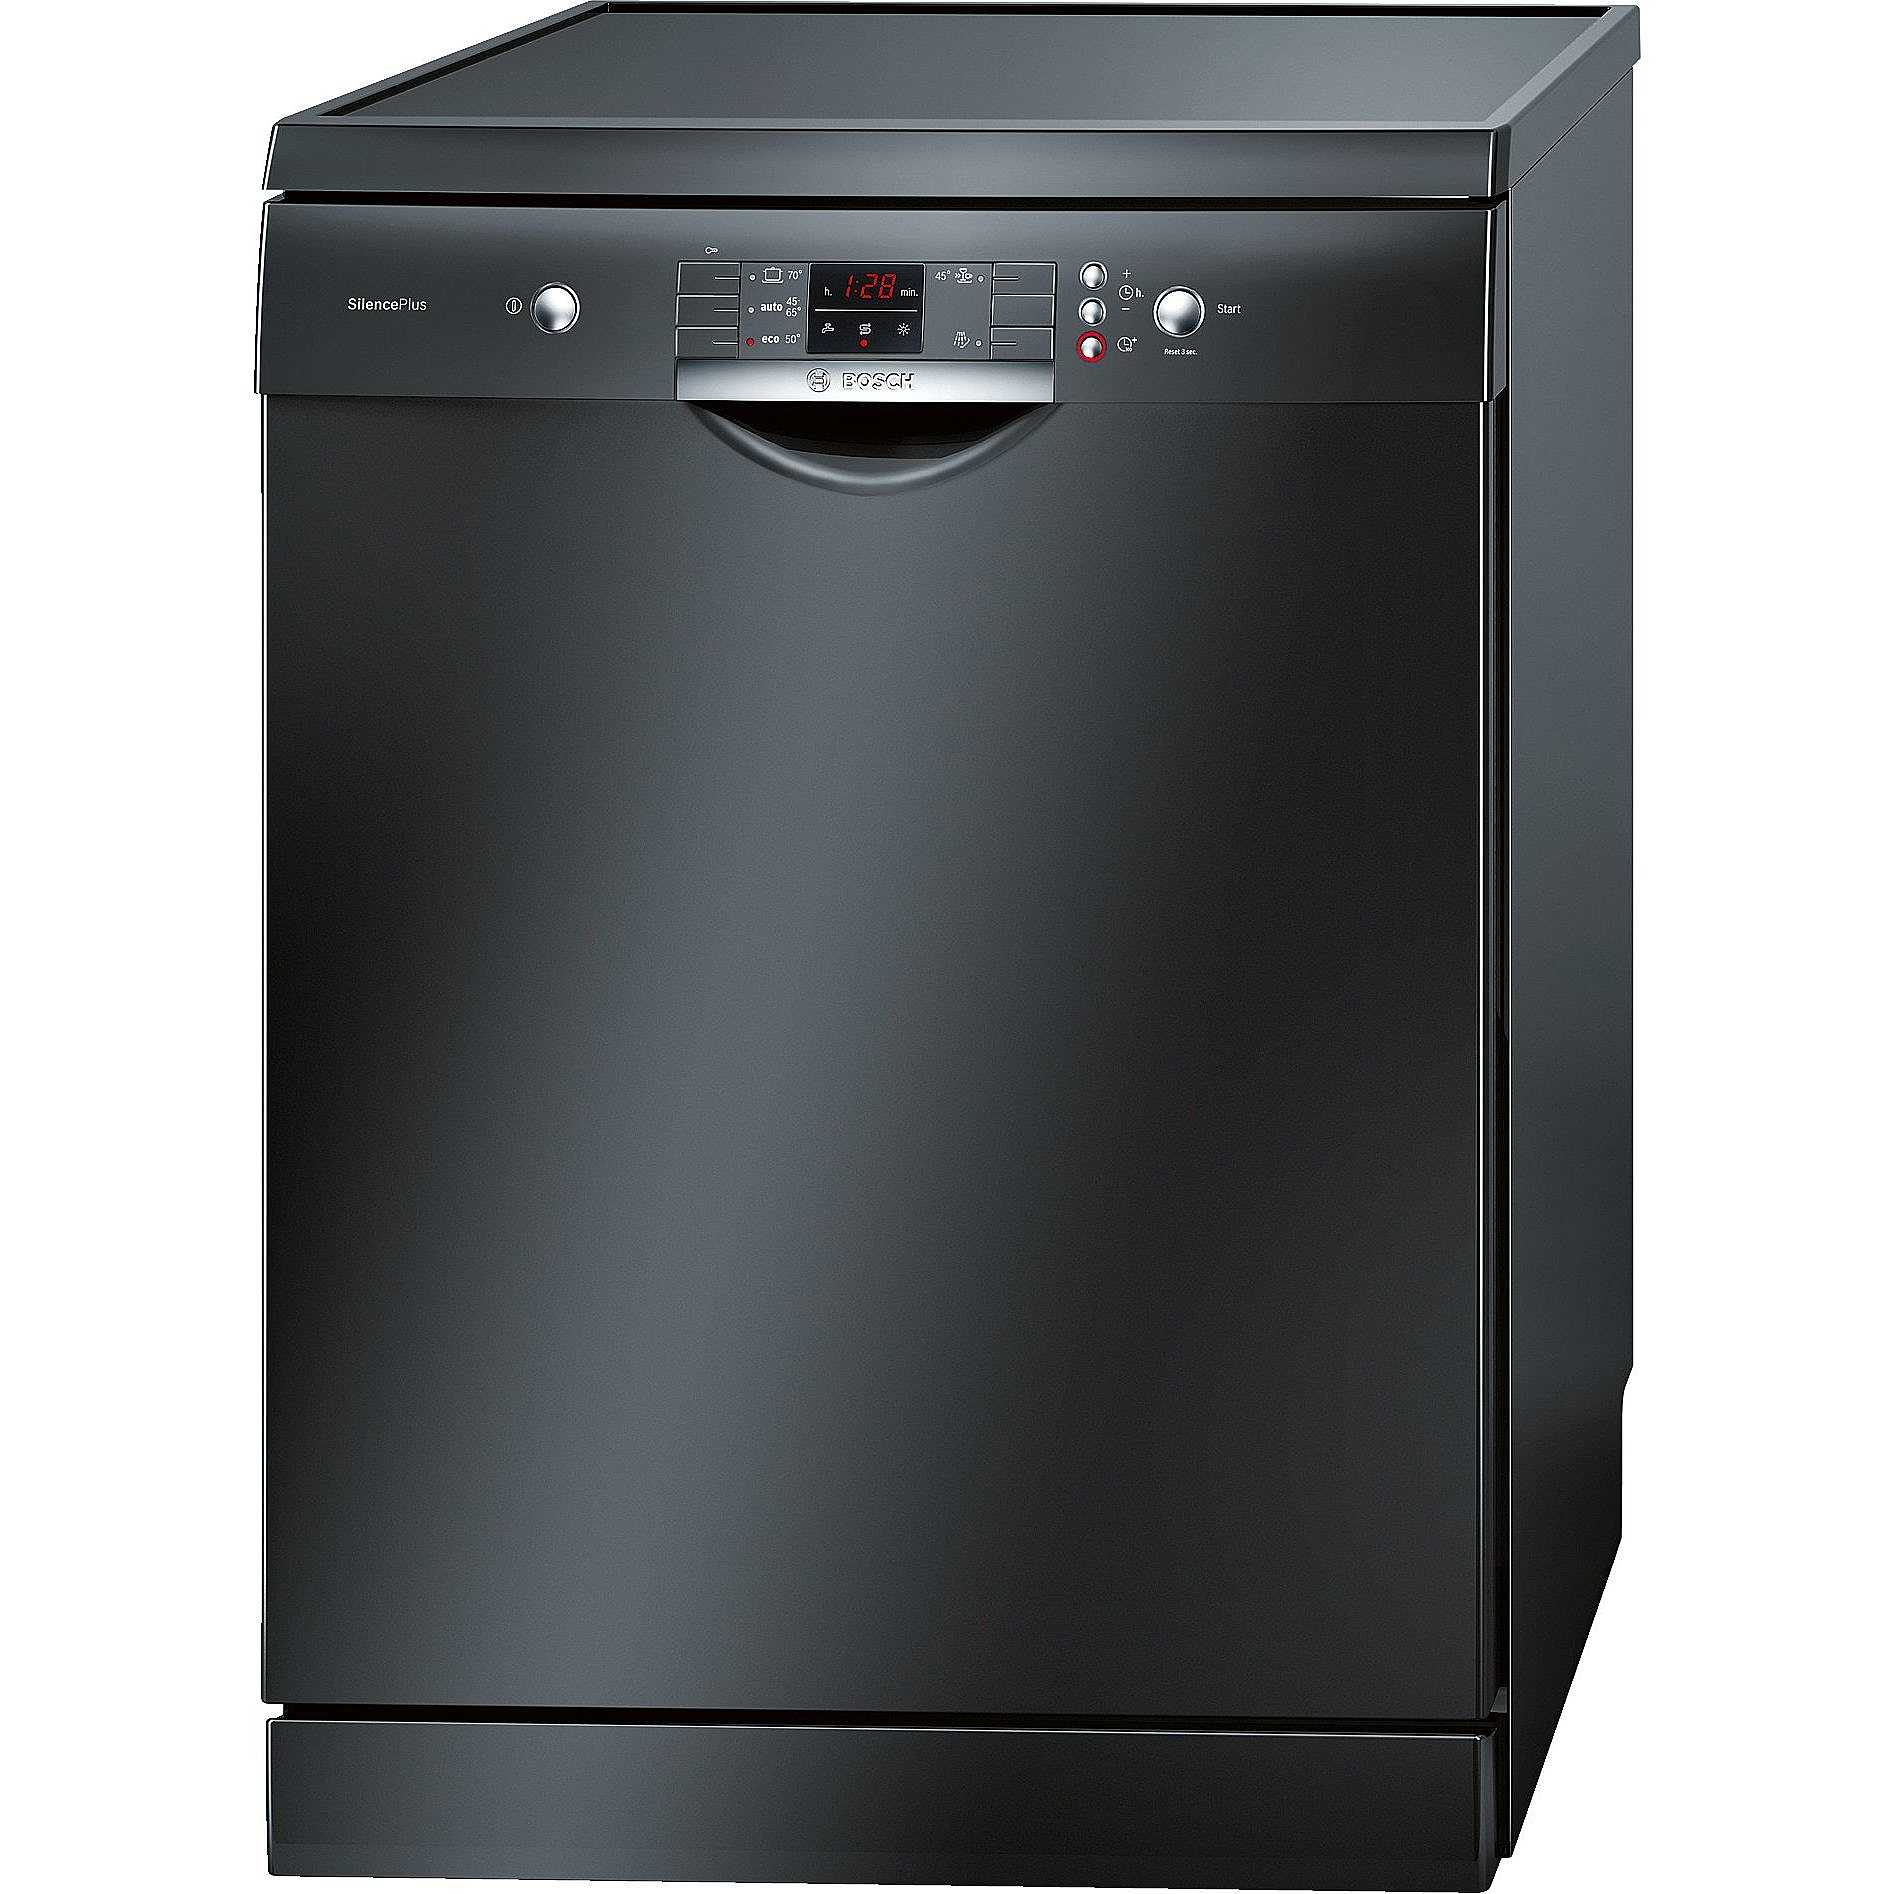 Посудомоечная машина 60 см купить в спб. Посудомоечная машина Bosch 60 Silence Plus. Bosch sms43d08me. Bosch посудомоечная машина черная отдельностоящая 60 см. Бош посудомоечная машина 60 см черная.